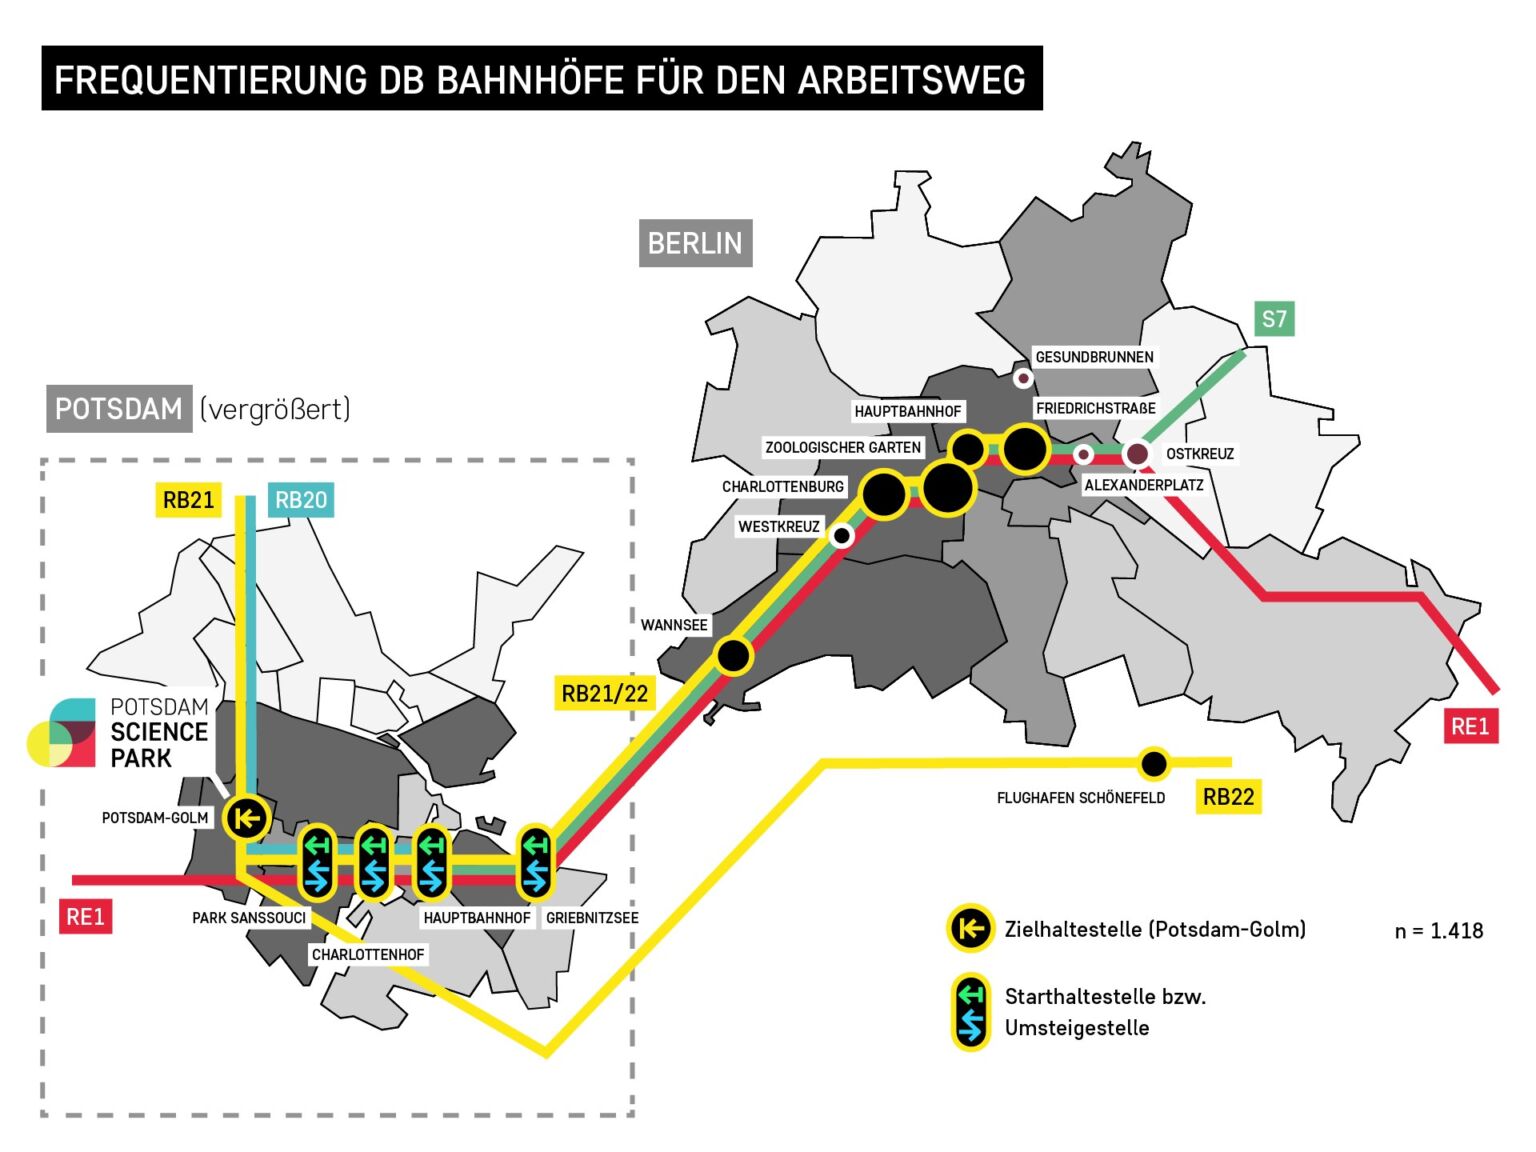 Potsdam Science Park - Verkehrsumfrage 2020 - Frequentierung der Bahnhöfe für den Arbeitsweg, Grafik: Ferdinand Dorendorf